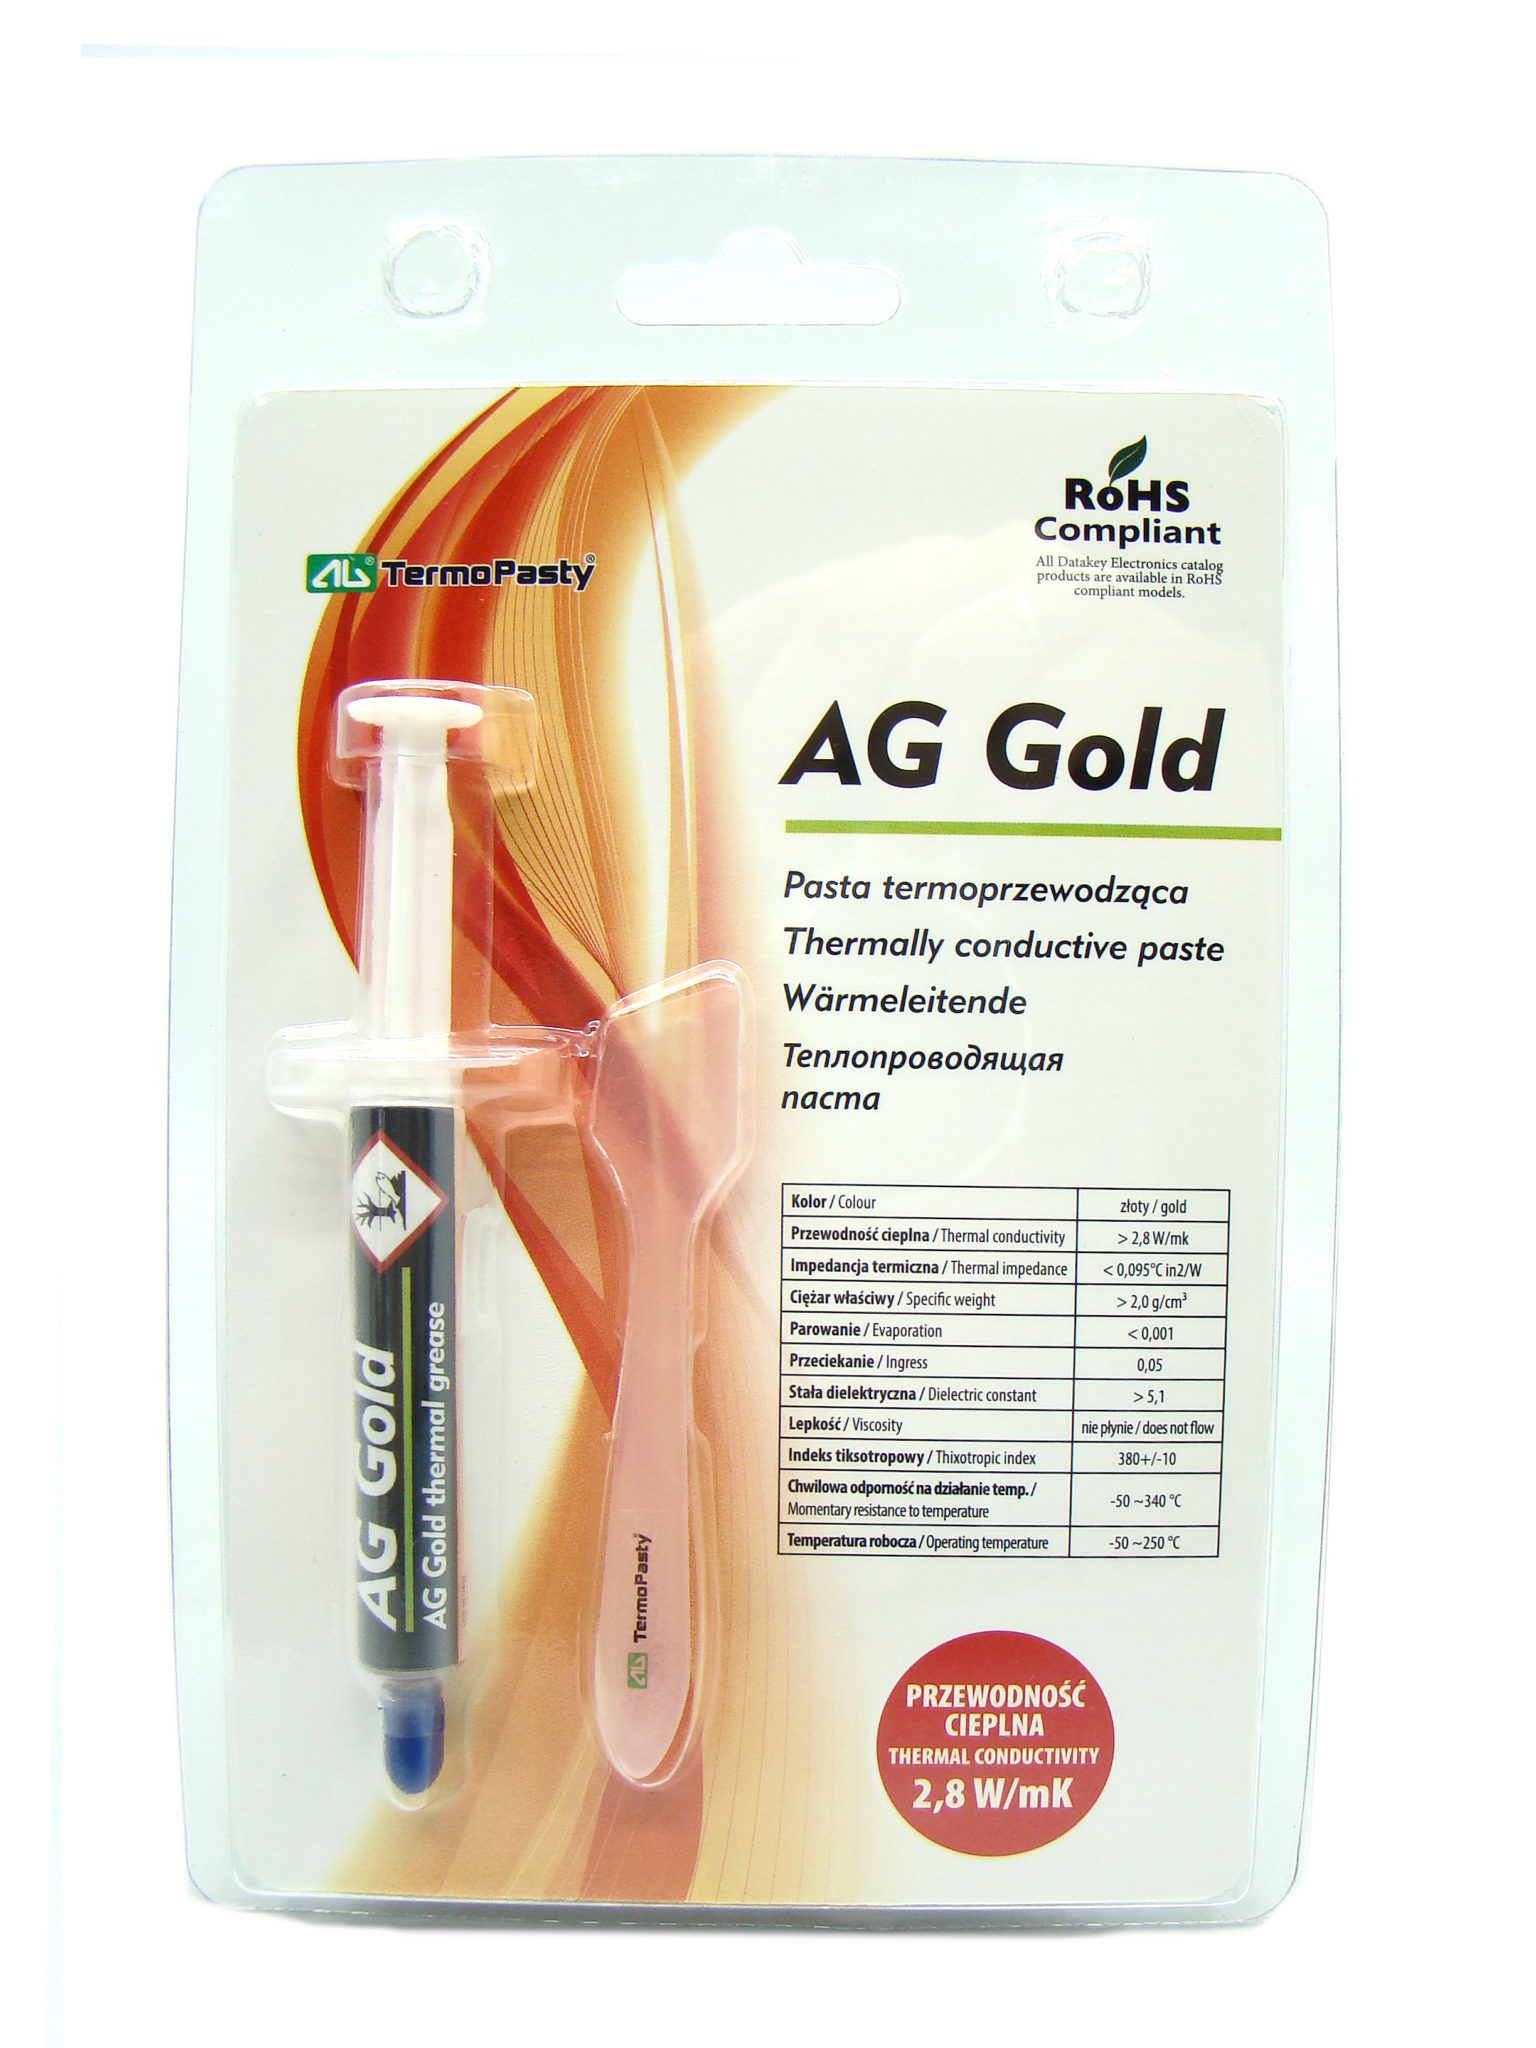 Strzykawka AG Gold o pojemności 3g – pasta termoprzewodząca ze złotem.